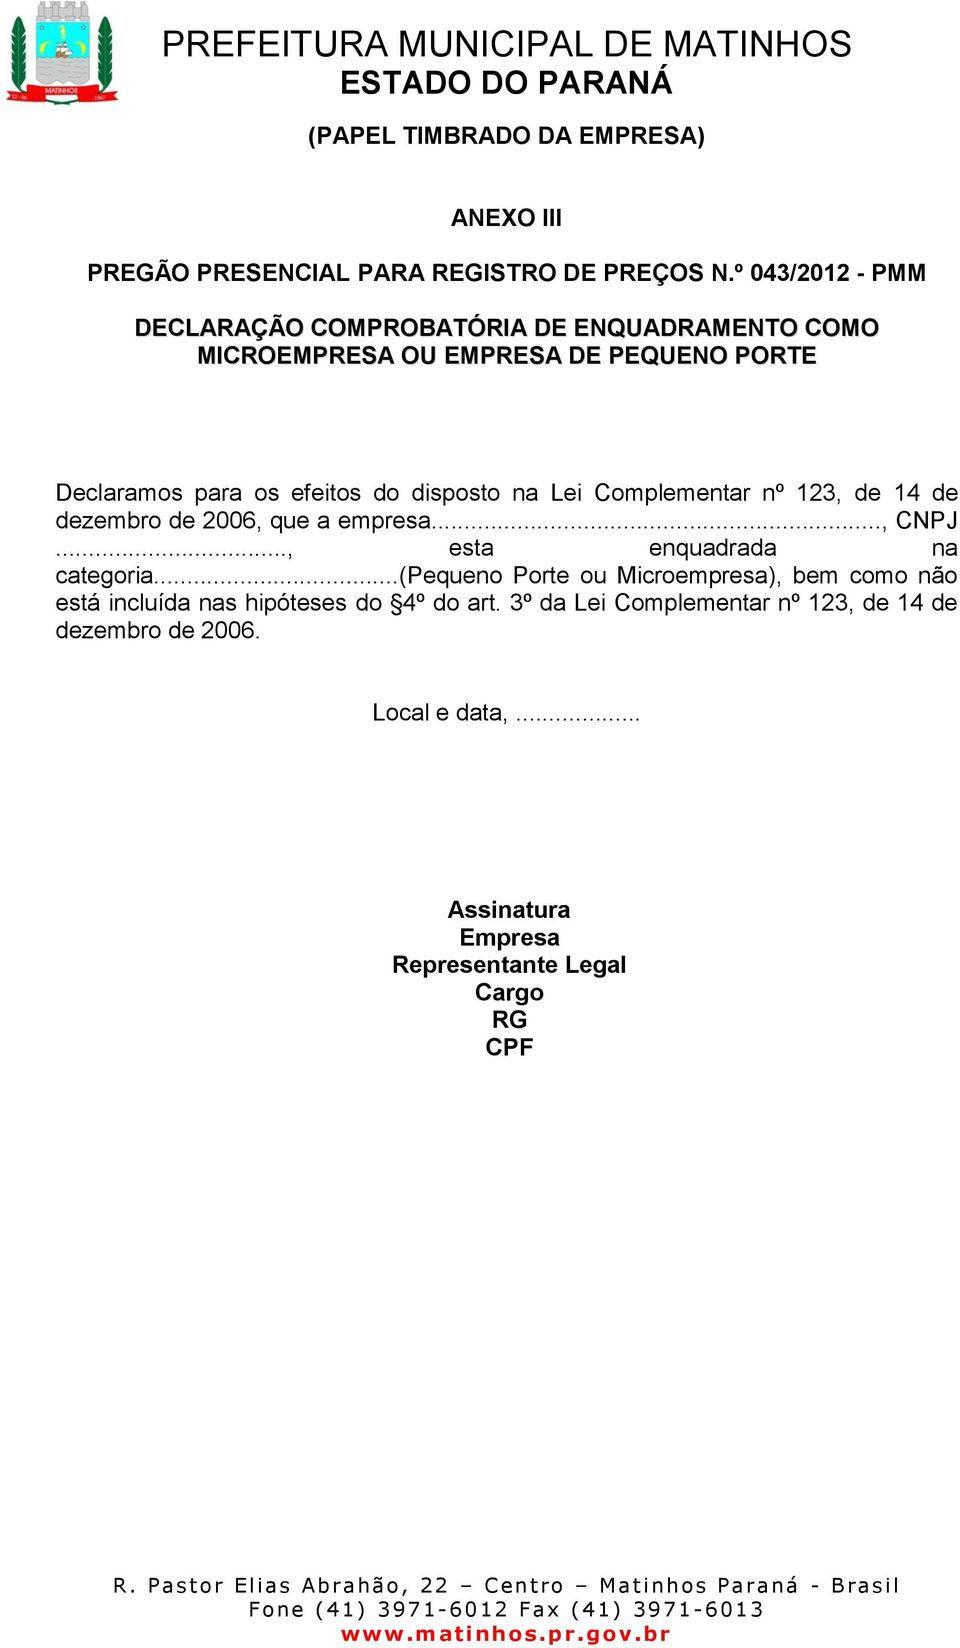 disposto na Lei Complementar nº 123, de 14 de dezembro de 2006, que a empresa..., CNPJ..., esta enquadrada na categoria.